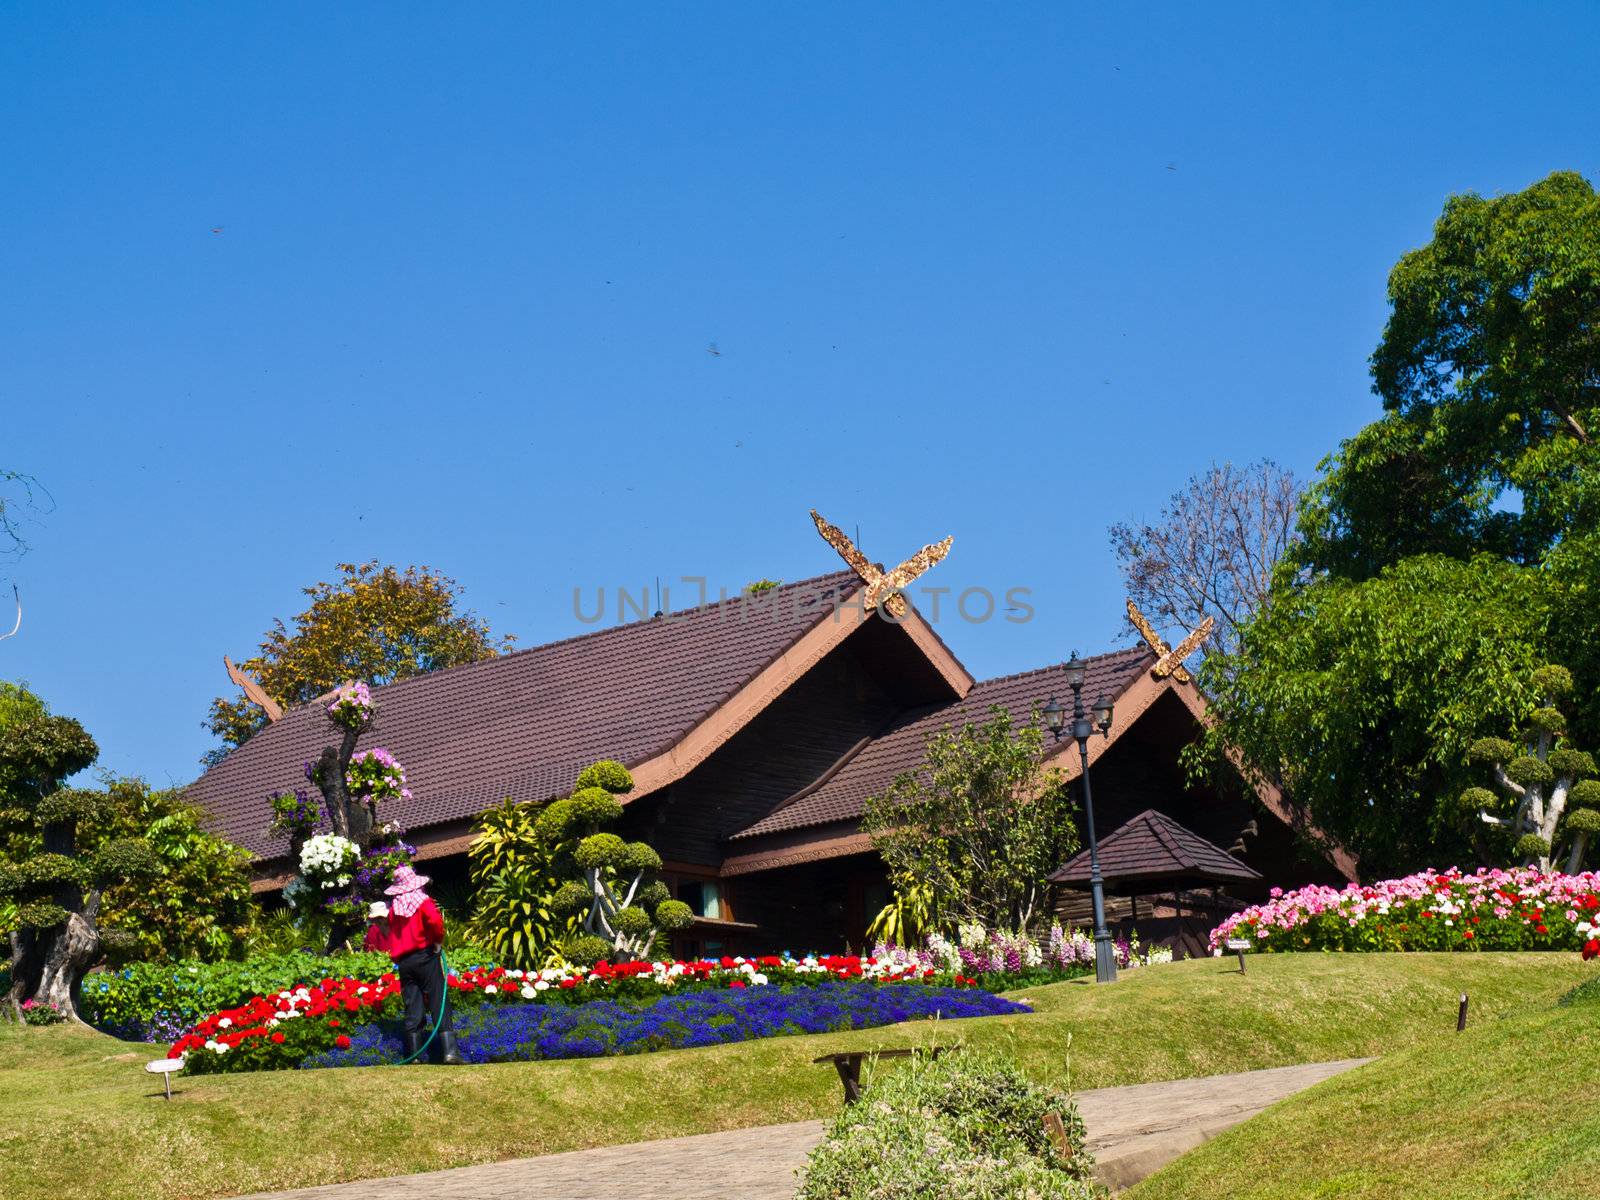 Doi Tung villa, Chiang Rai, Thailand by gururugu